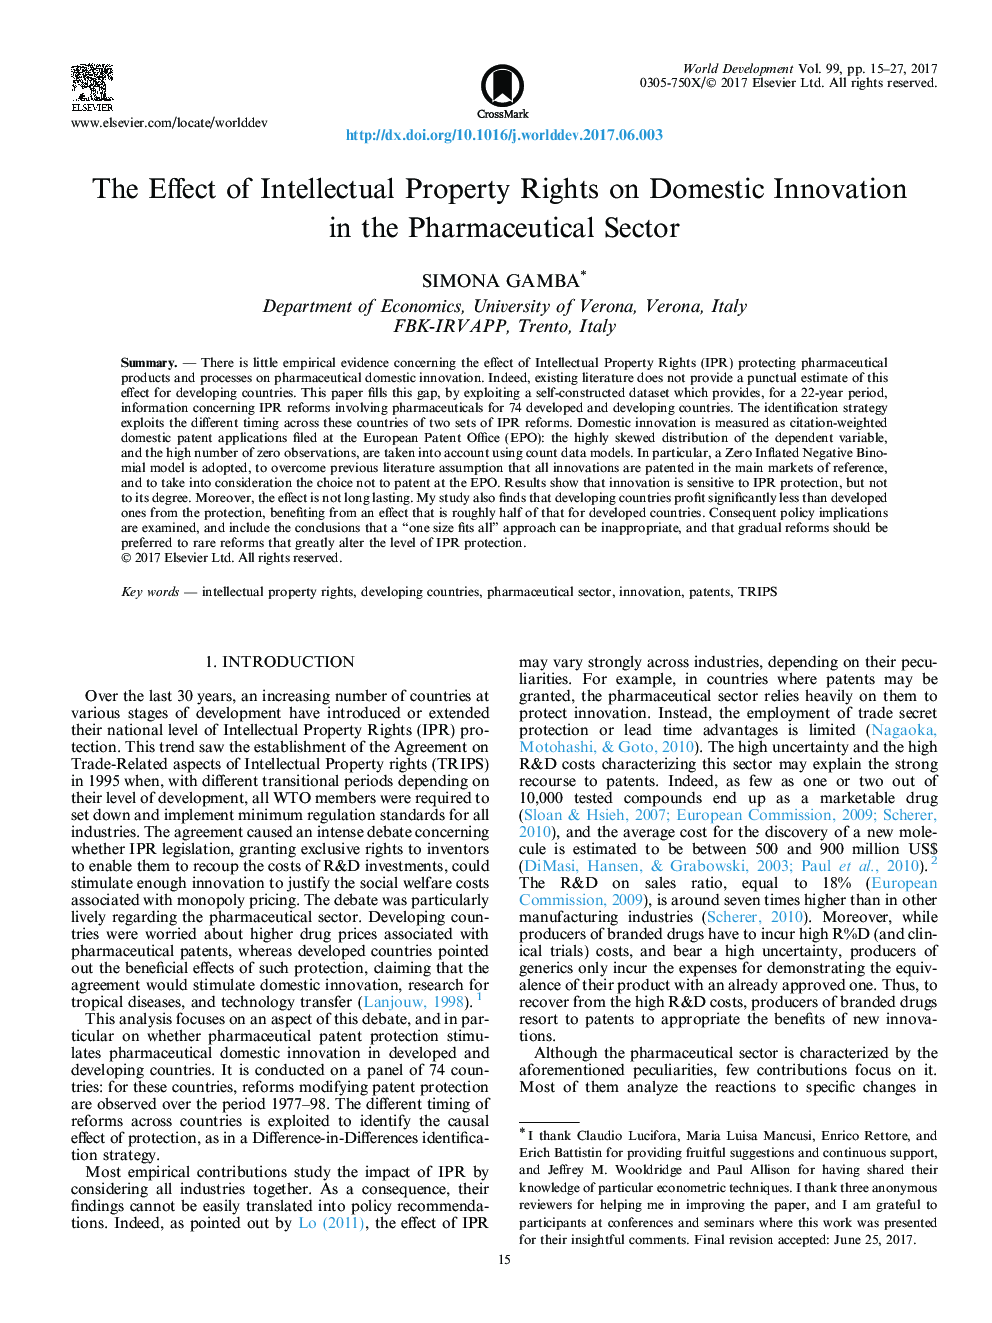 تأثیر حقوق مالکیت معنوی بر نوآوری داخلی در بخش داروسازی 